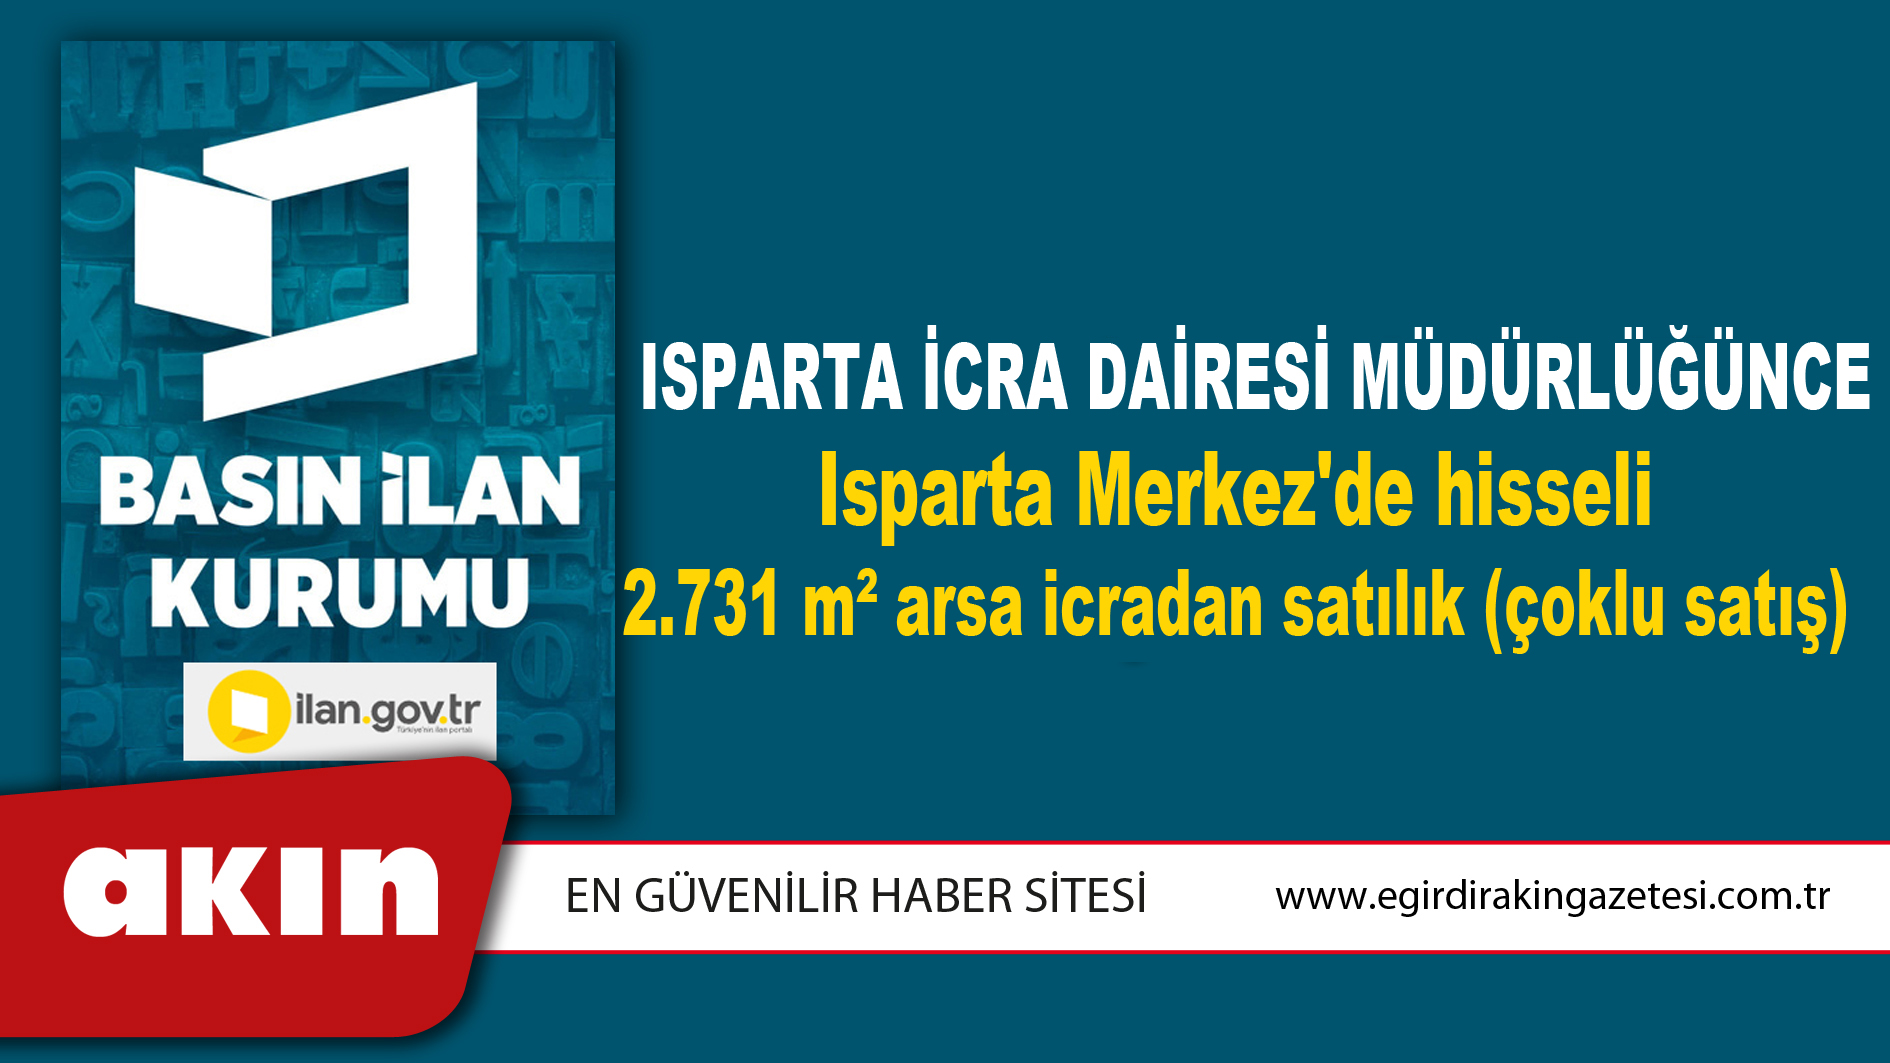 Isparta İcra Dairesi Müdürlüğünce Isparta Merkez'de hisseli 2.731 m² arsa icradan satılık (çoklu satış)